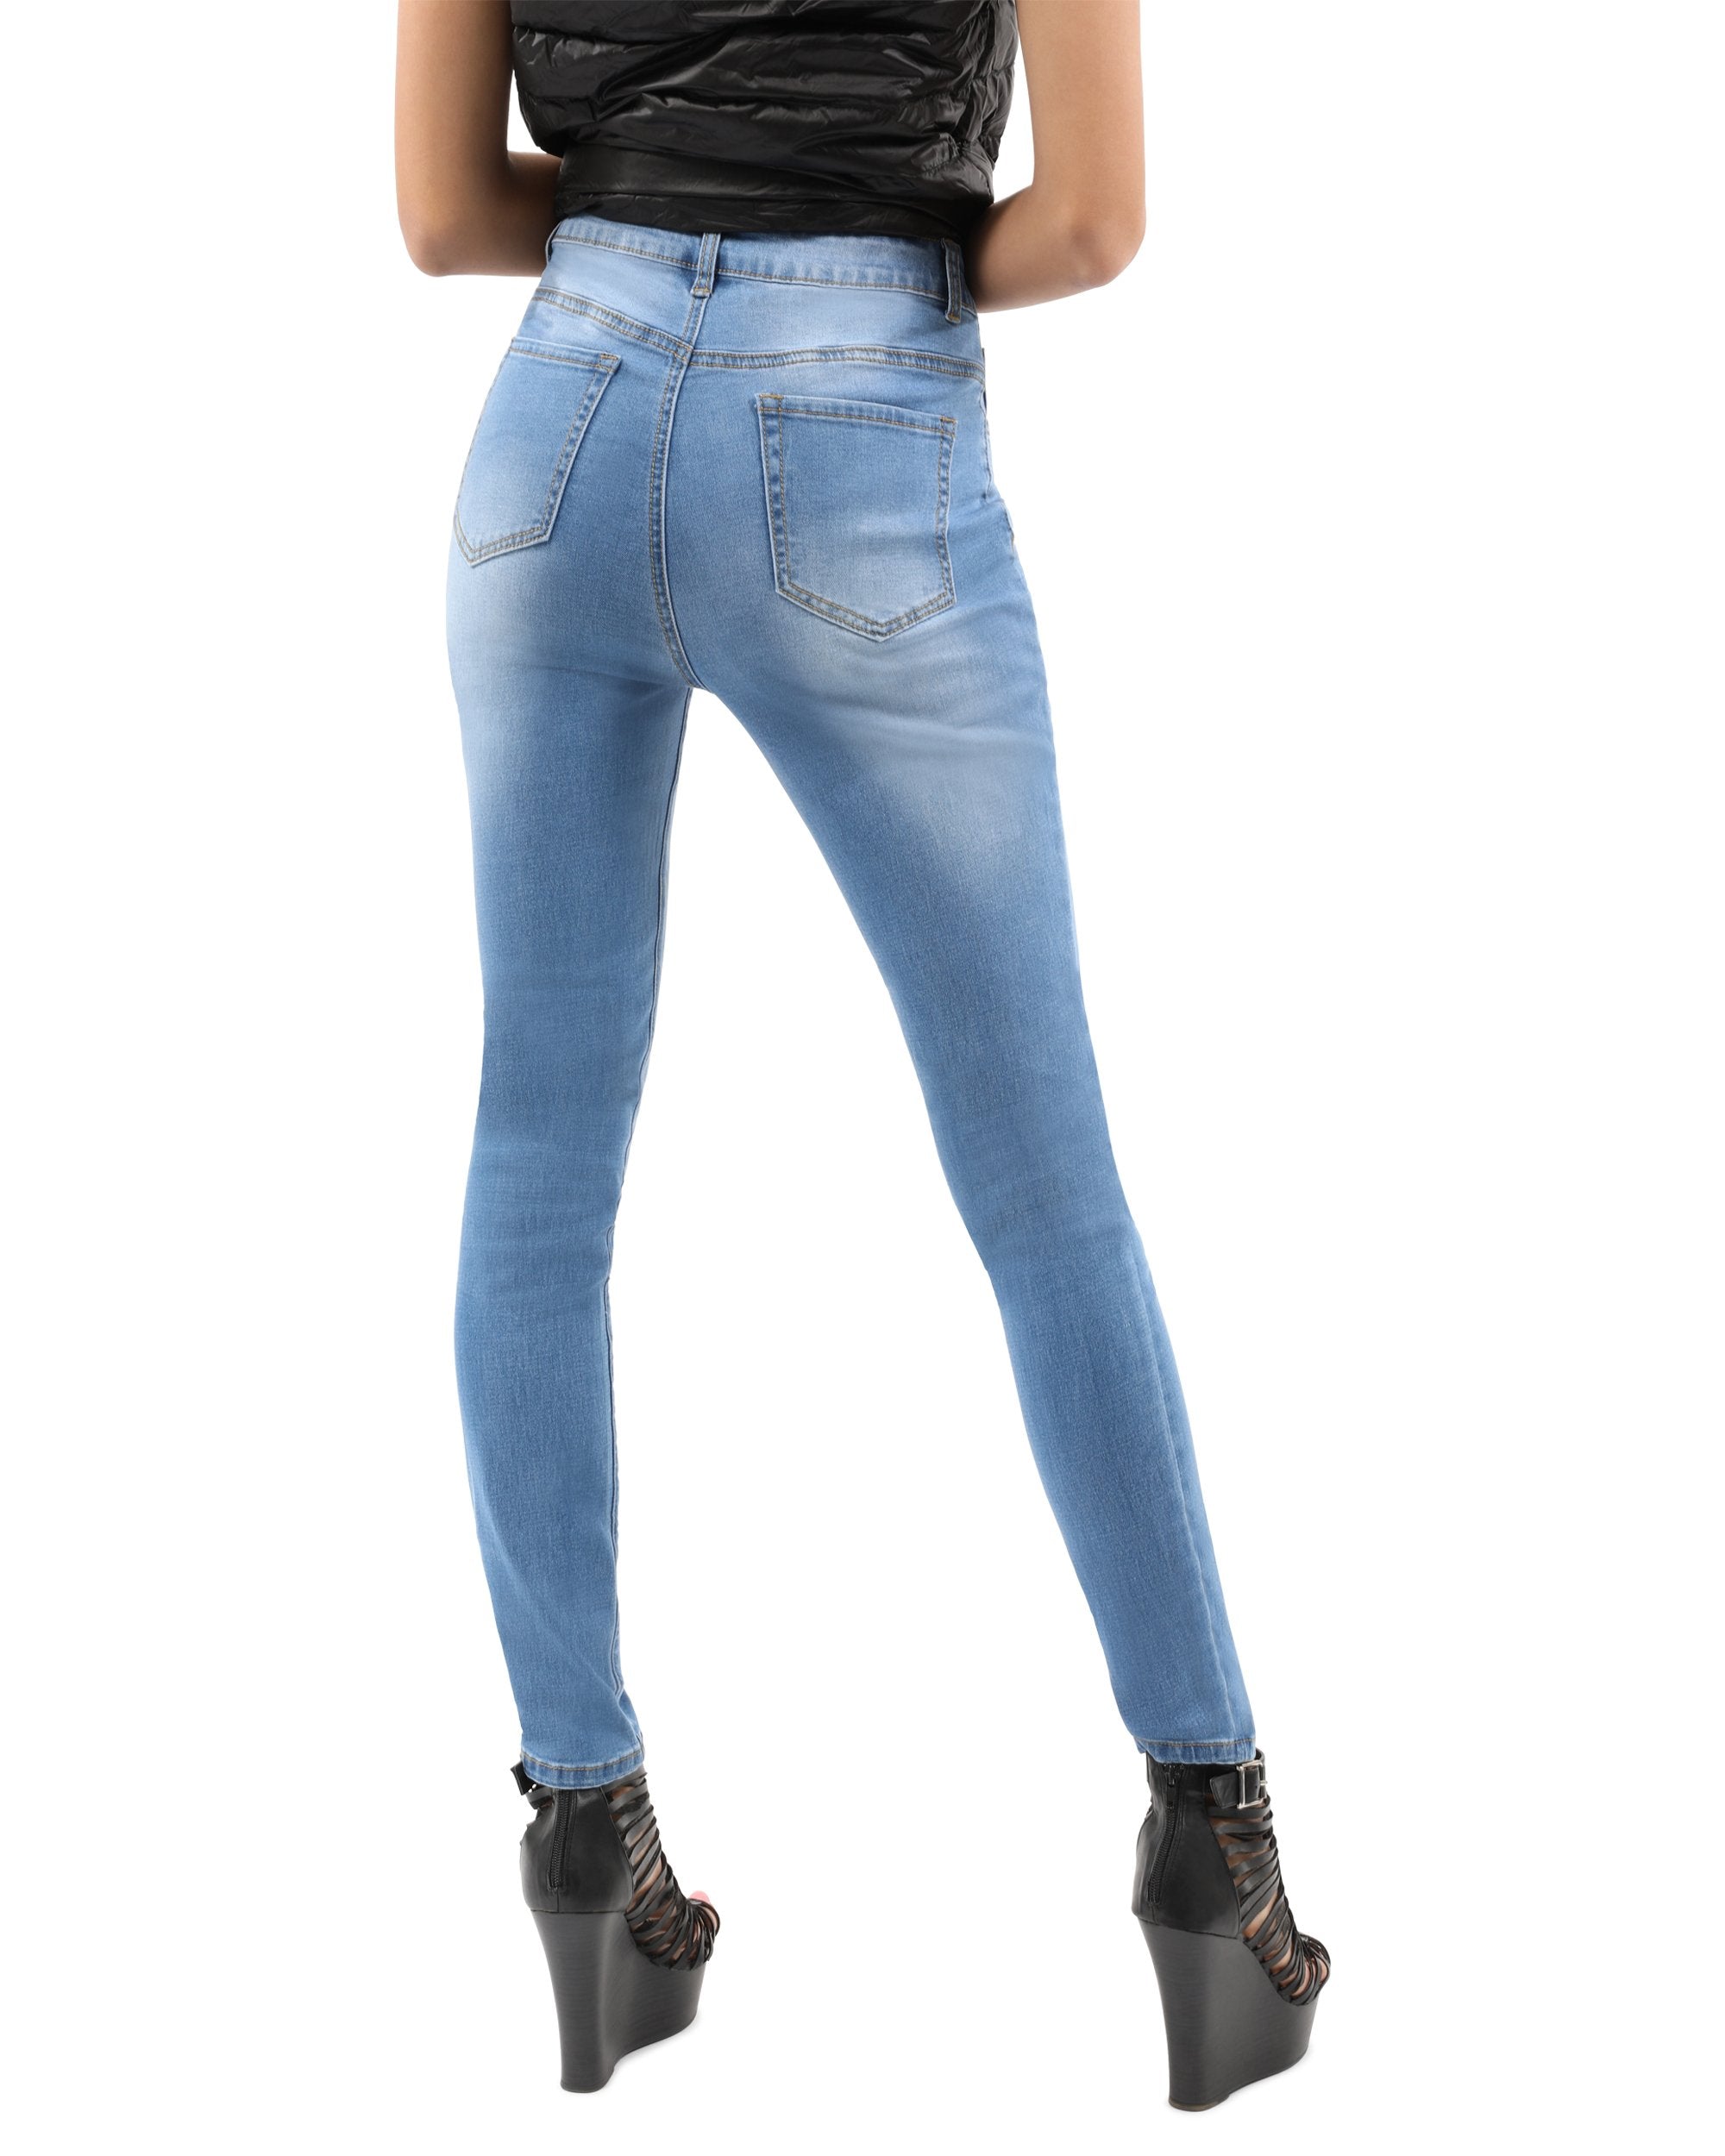 Burnley Skinny Jeans - Light Blue